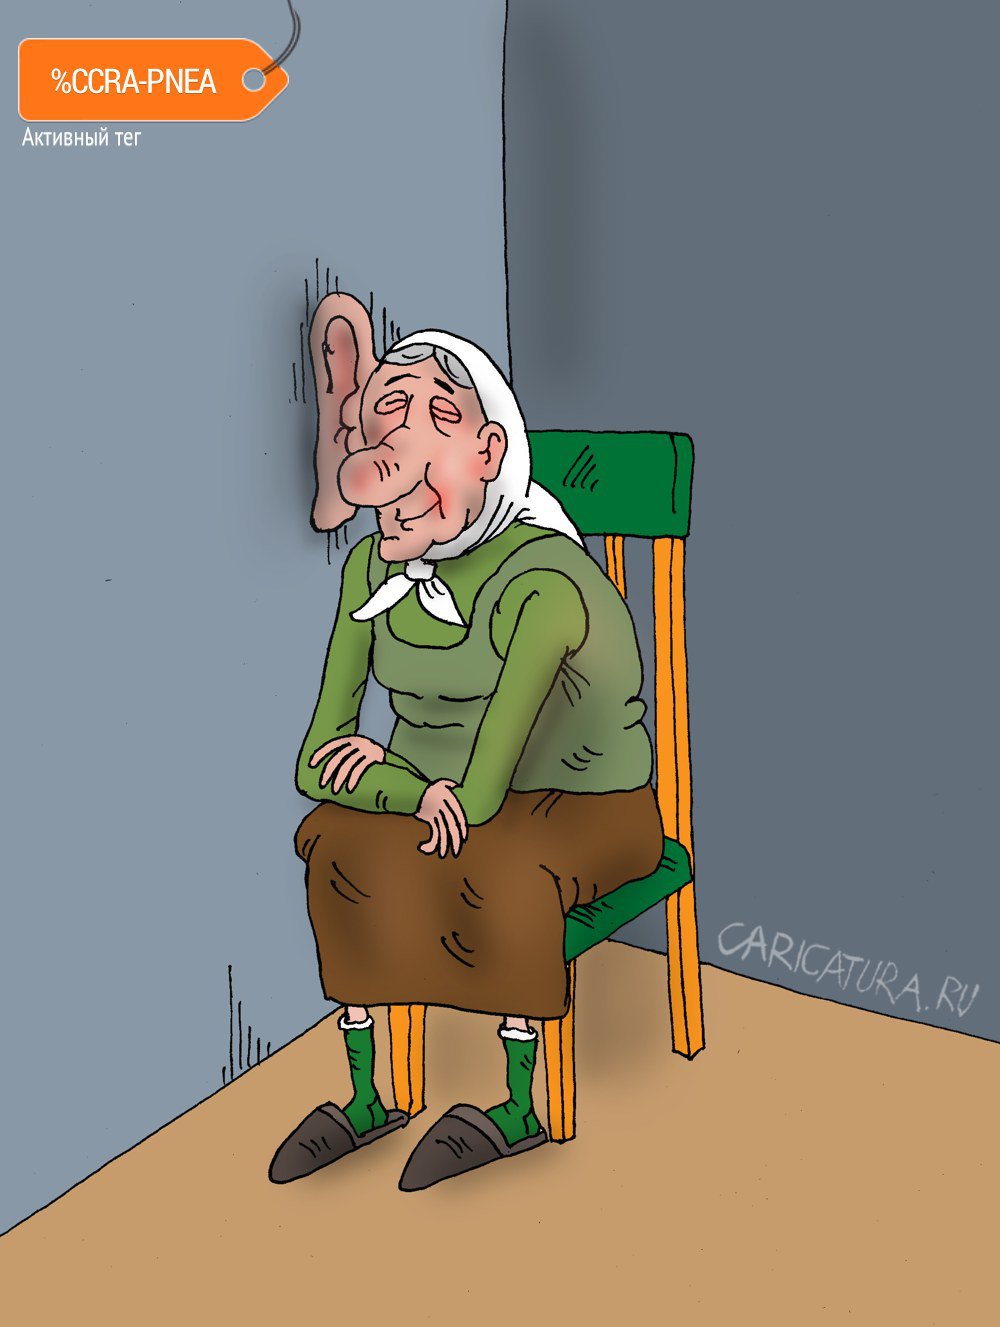 Карикатура "Соседка", Валерий Тарасенко